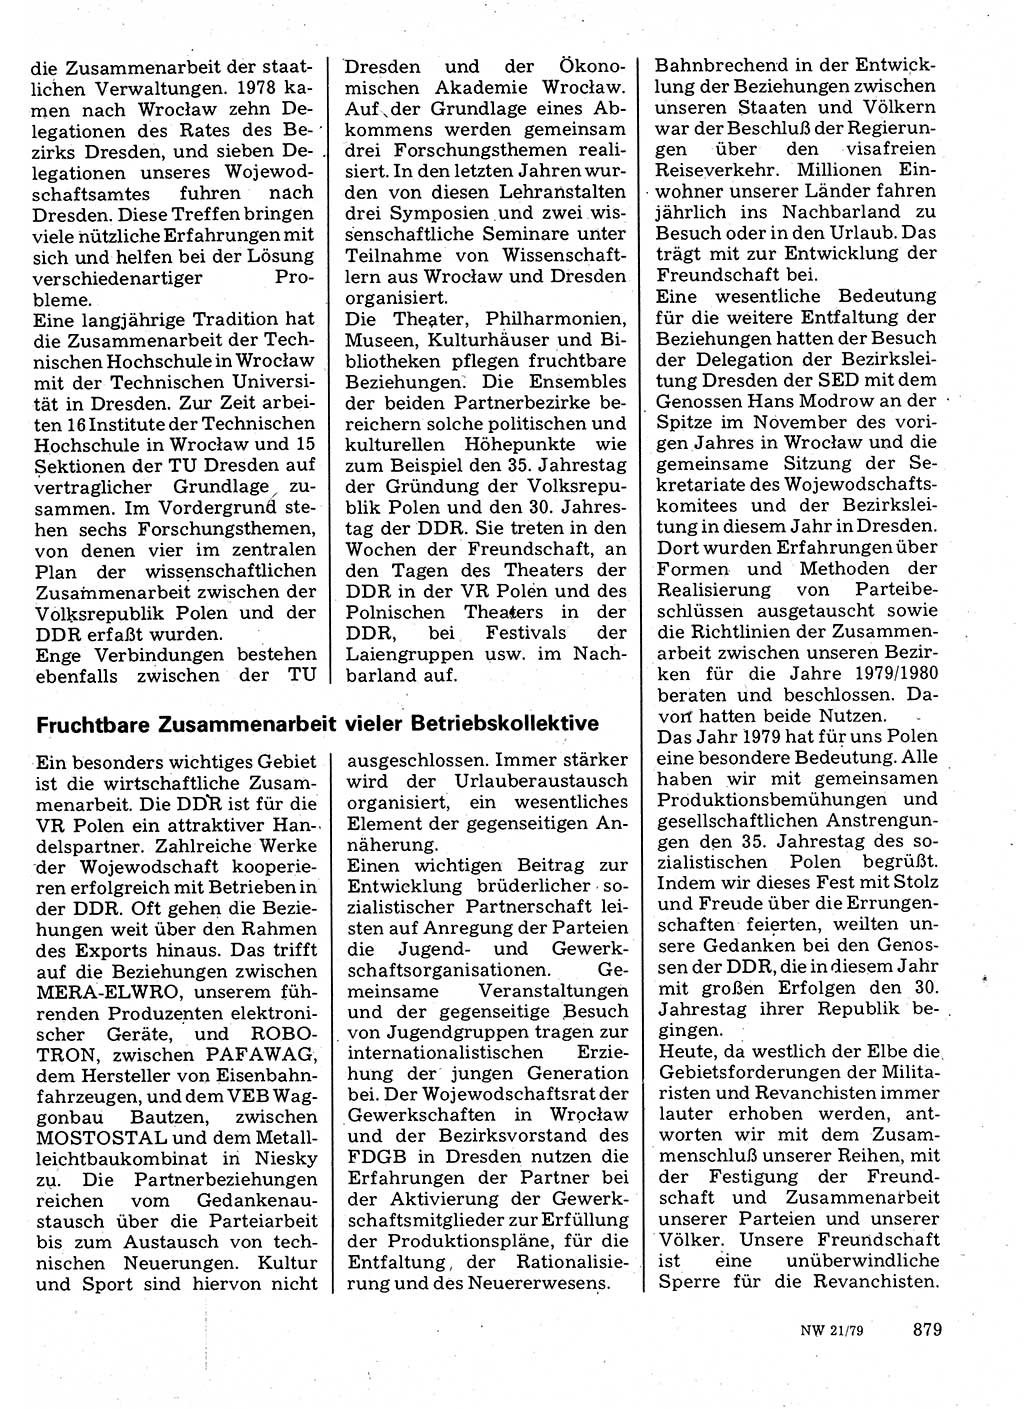 Neuer Weg (NW), Organ des Zentralkomitees (ZK) der SED (Sozialistische Einheitspartei Deutschlands) für Fragen des Parteilebens, 34. Jahrgang [Deutsche Demokratische Republik (DDR)] 1979, Seite 879 (NW ZK SED DDR 1979, S. 879)